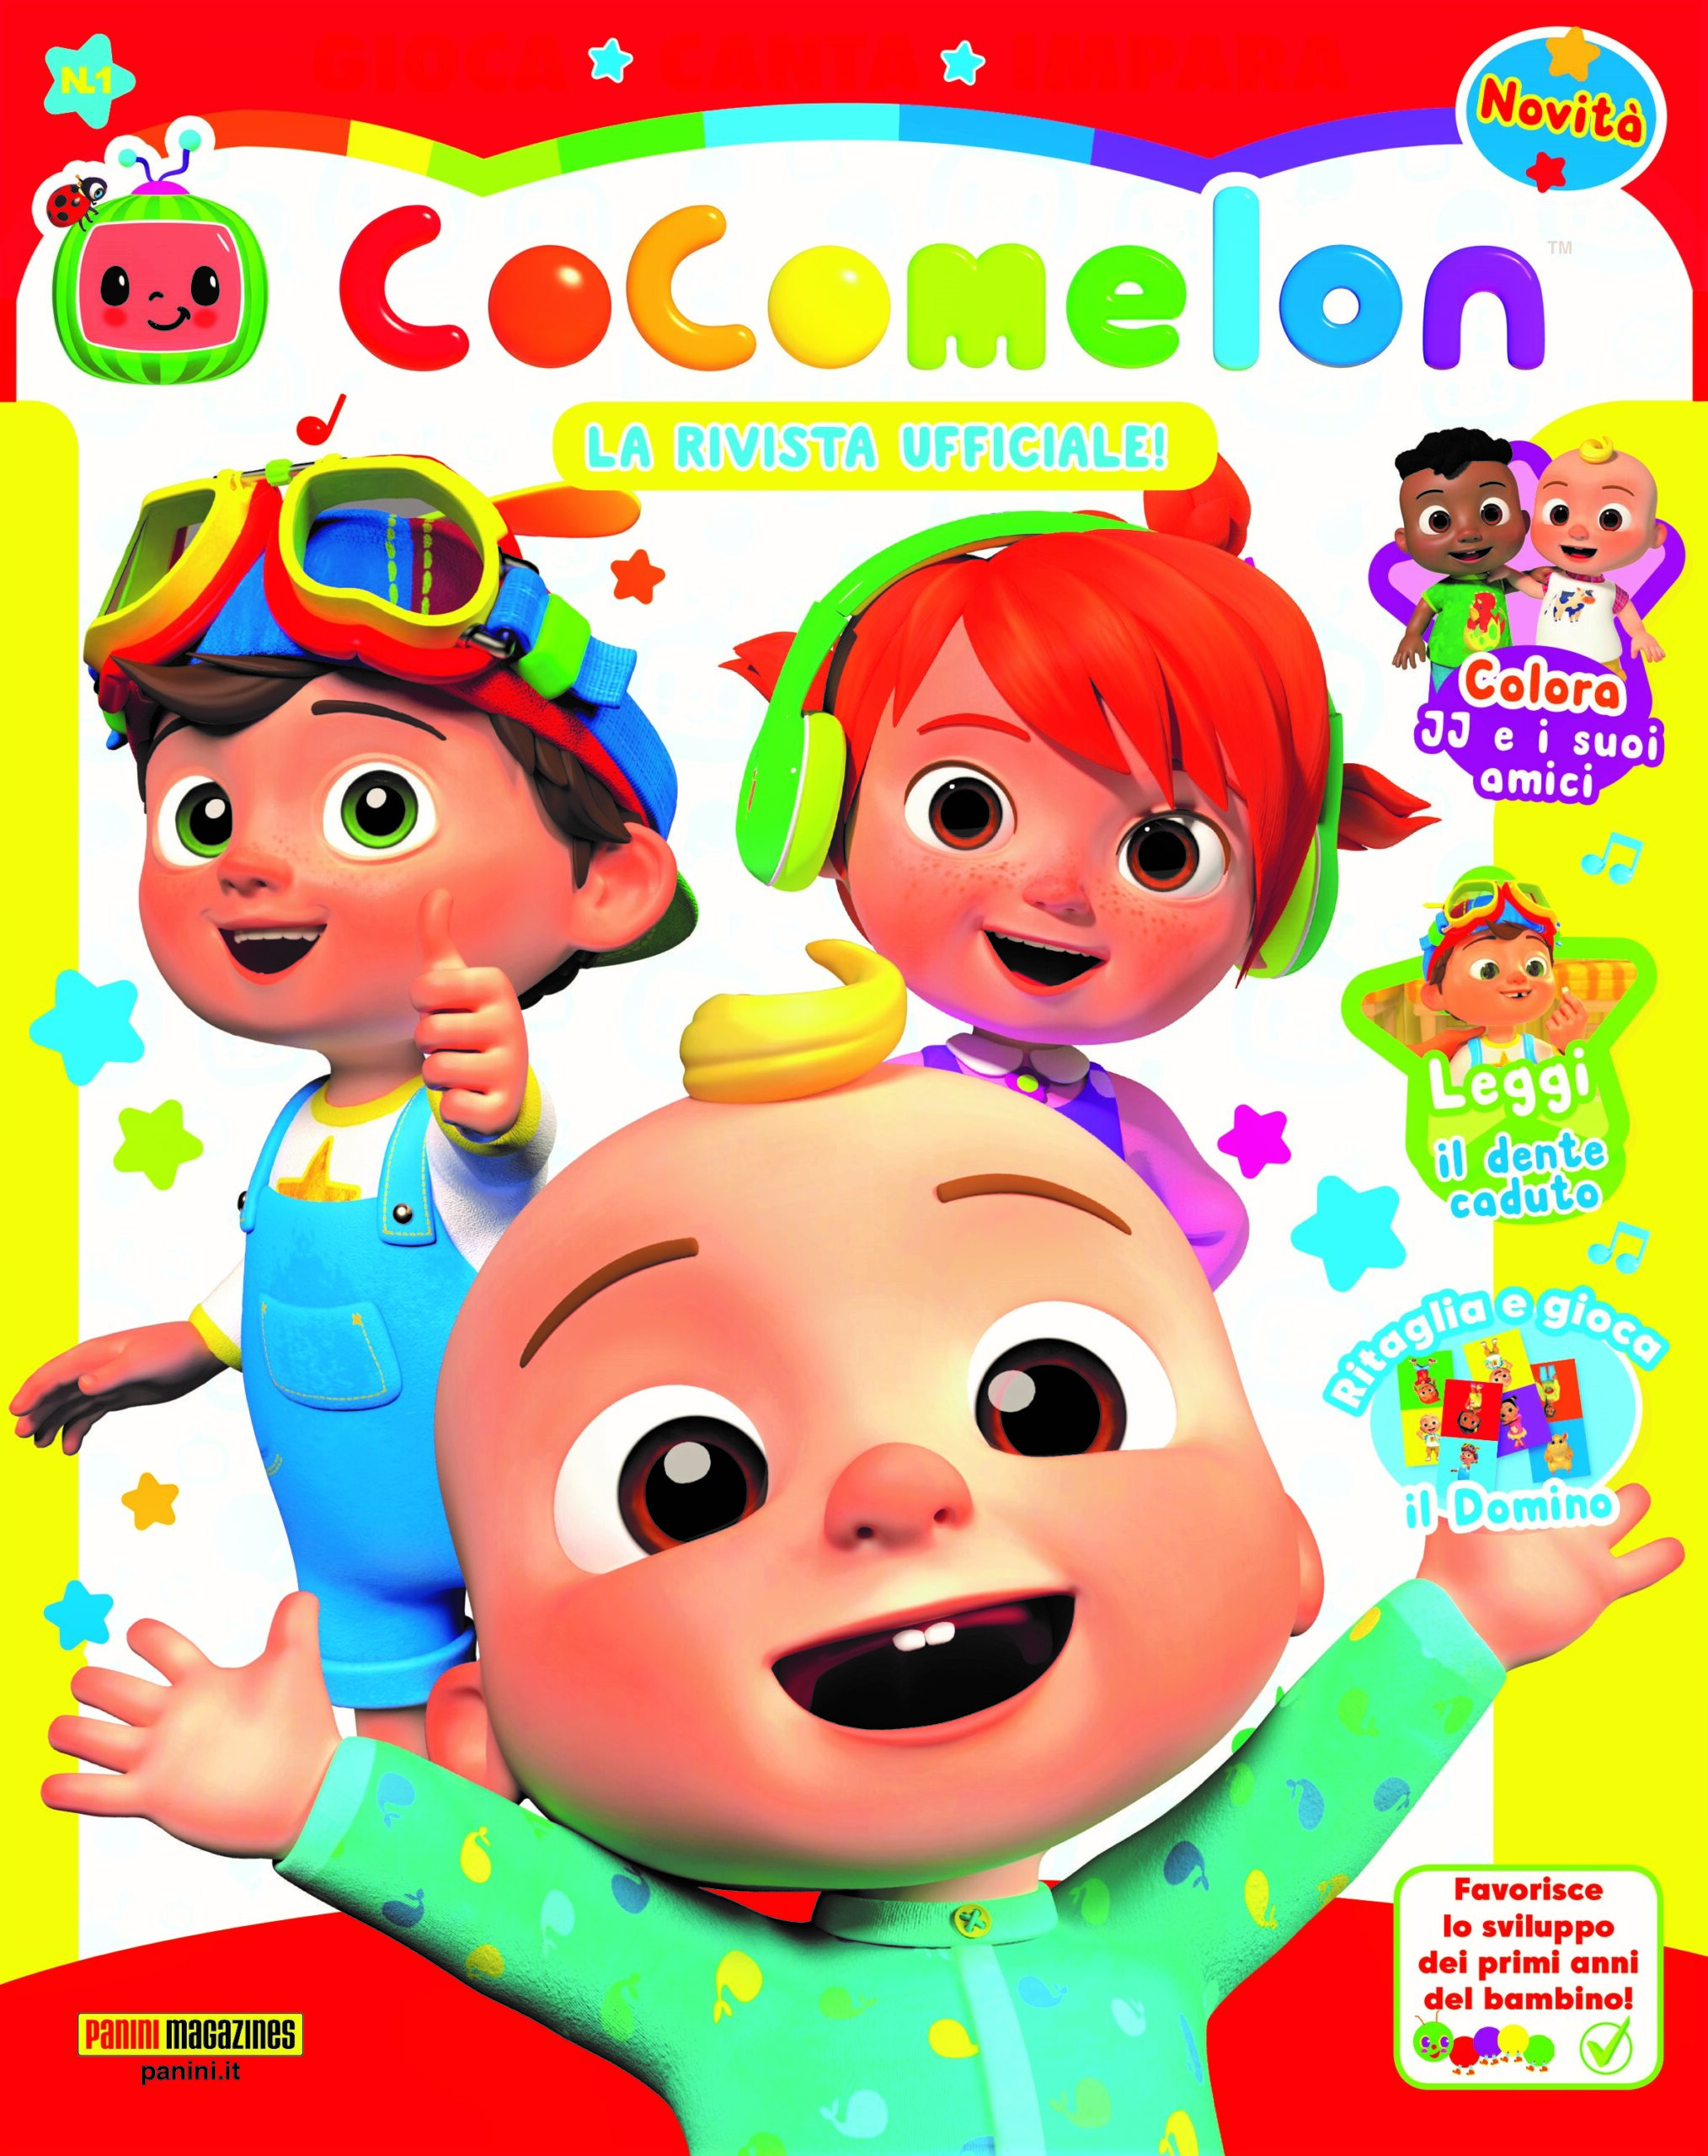 Panini Magazines presenta CoComelon